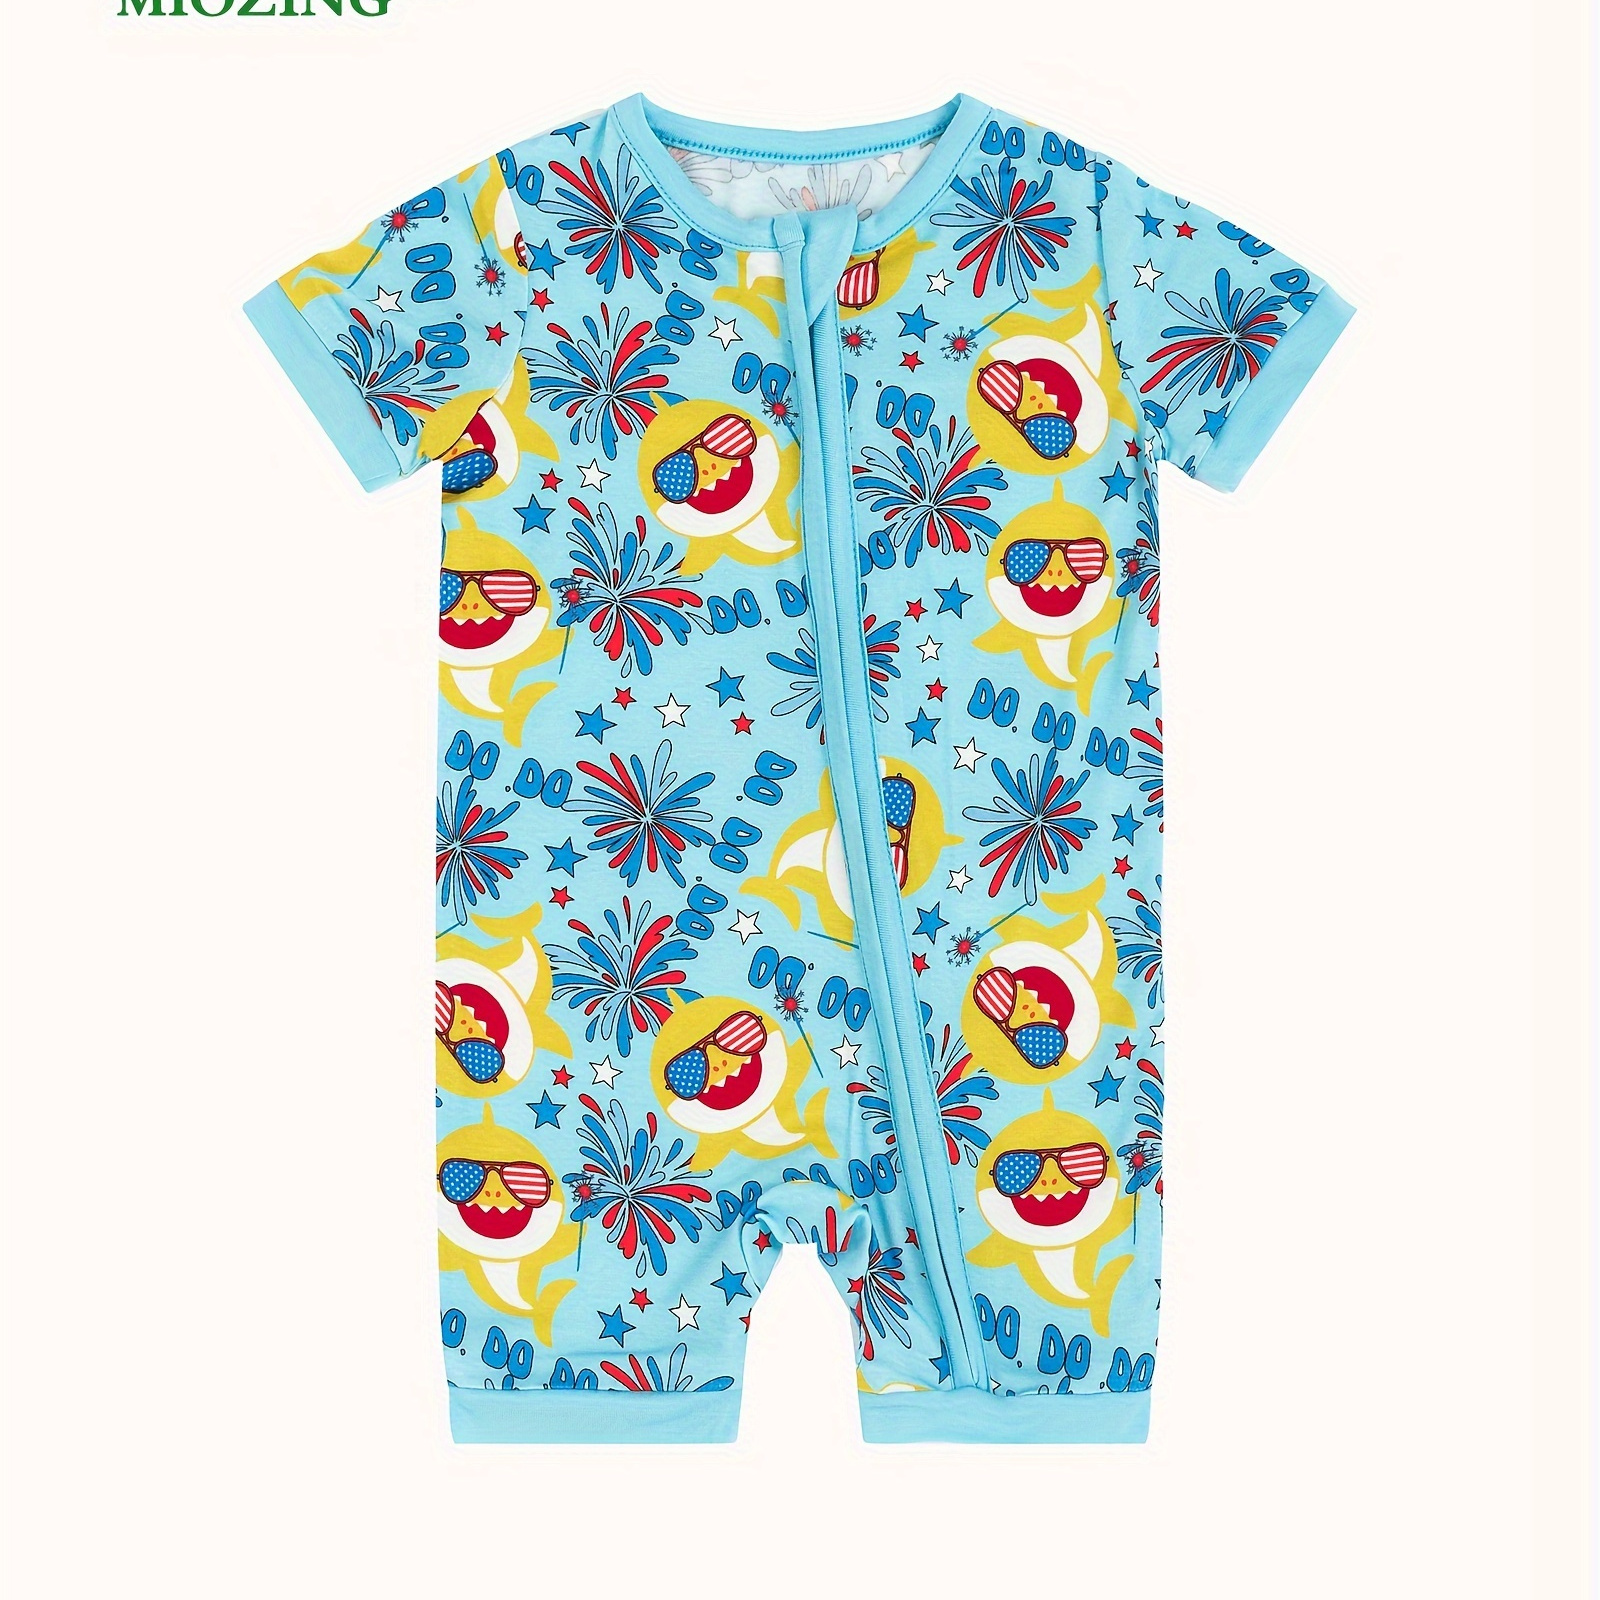 

Miozing Bamboo Fiber Bodysuit For Baby, Cartoon Sunglasses Shark Pattern Short Sleeve Onesie, Infant & Toddler Girl's Romper